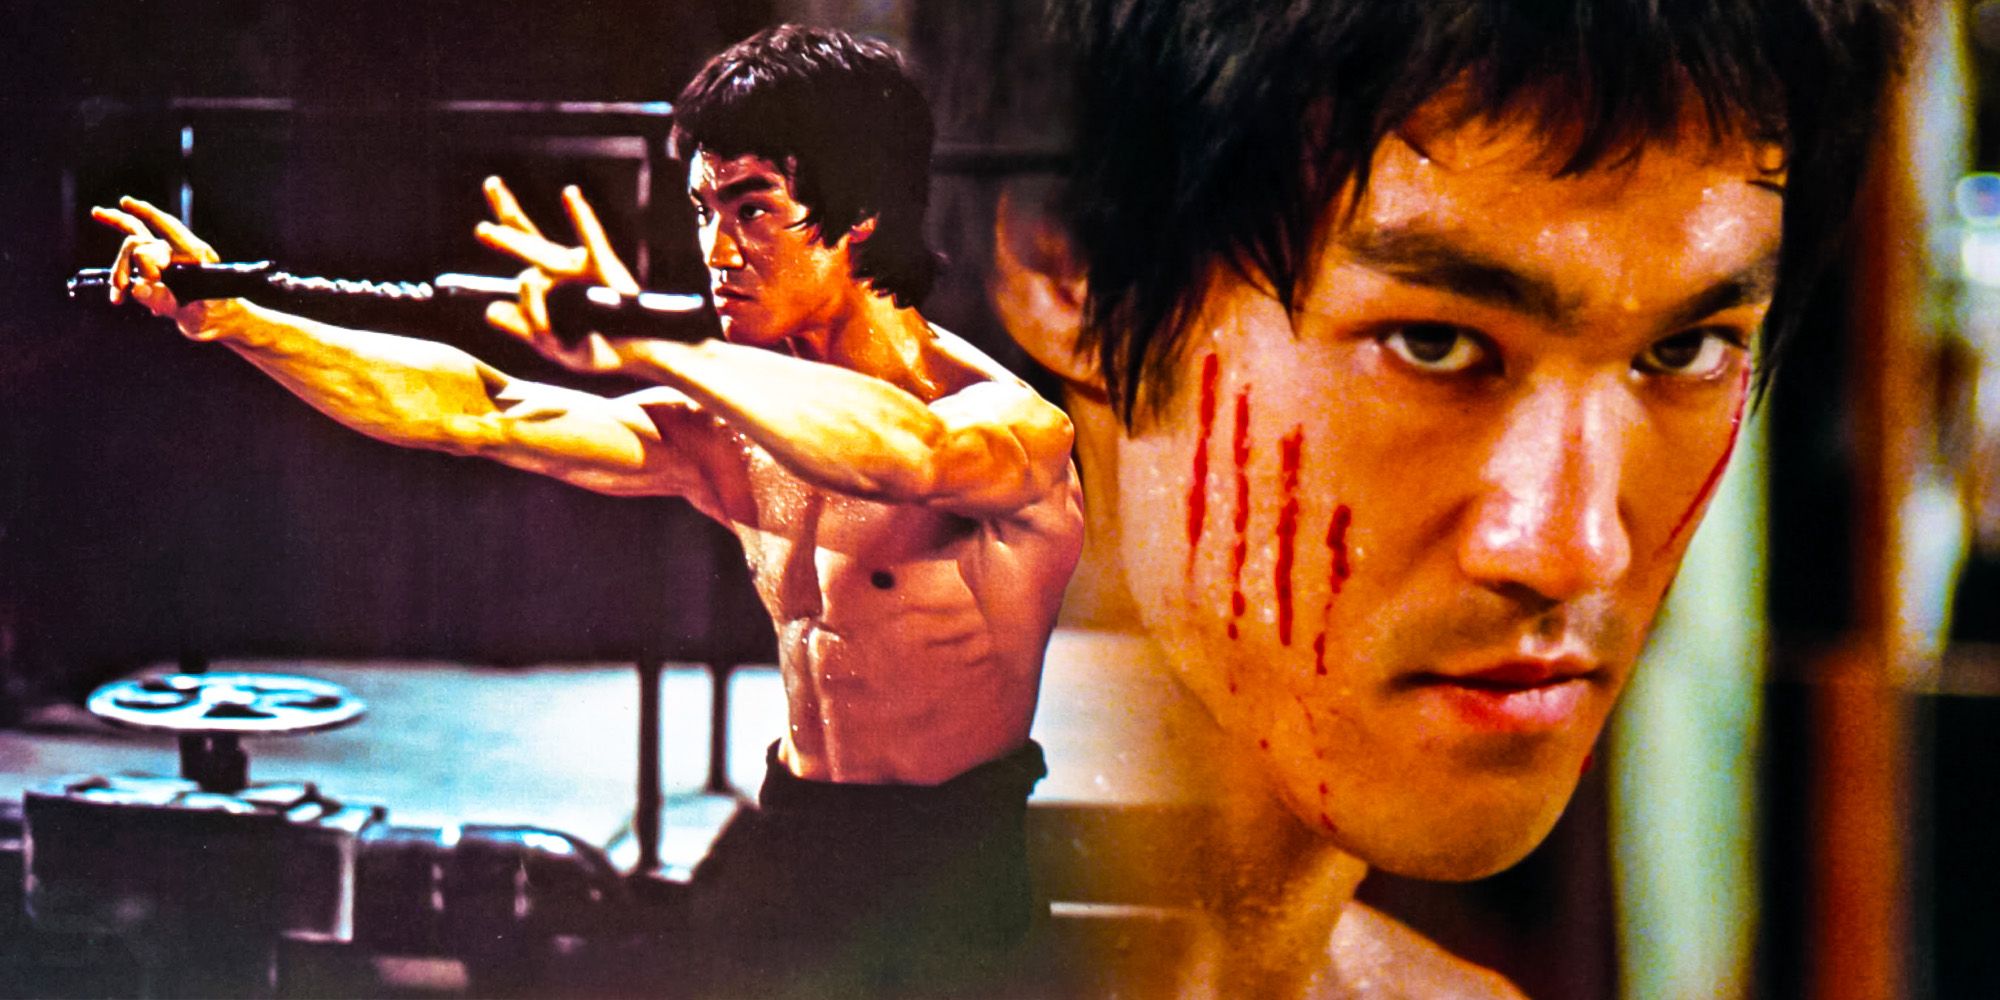 Bruce Lee hated nunchucks